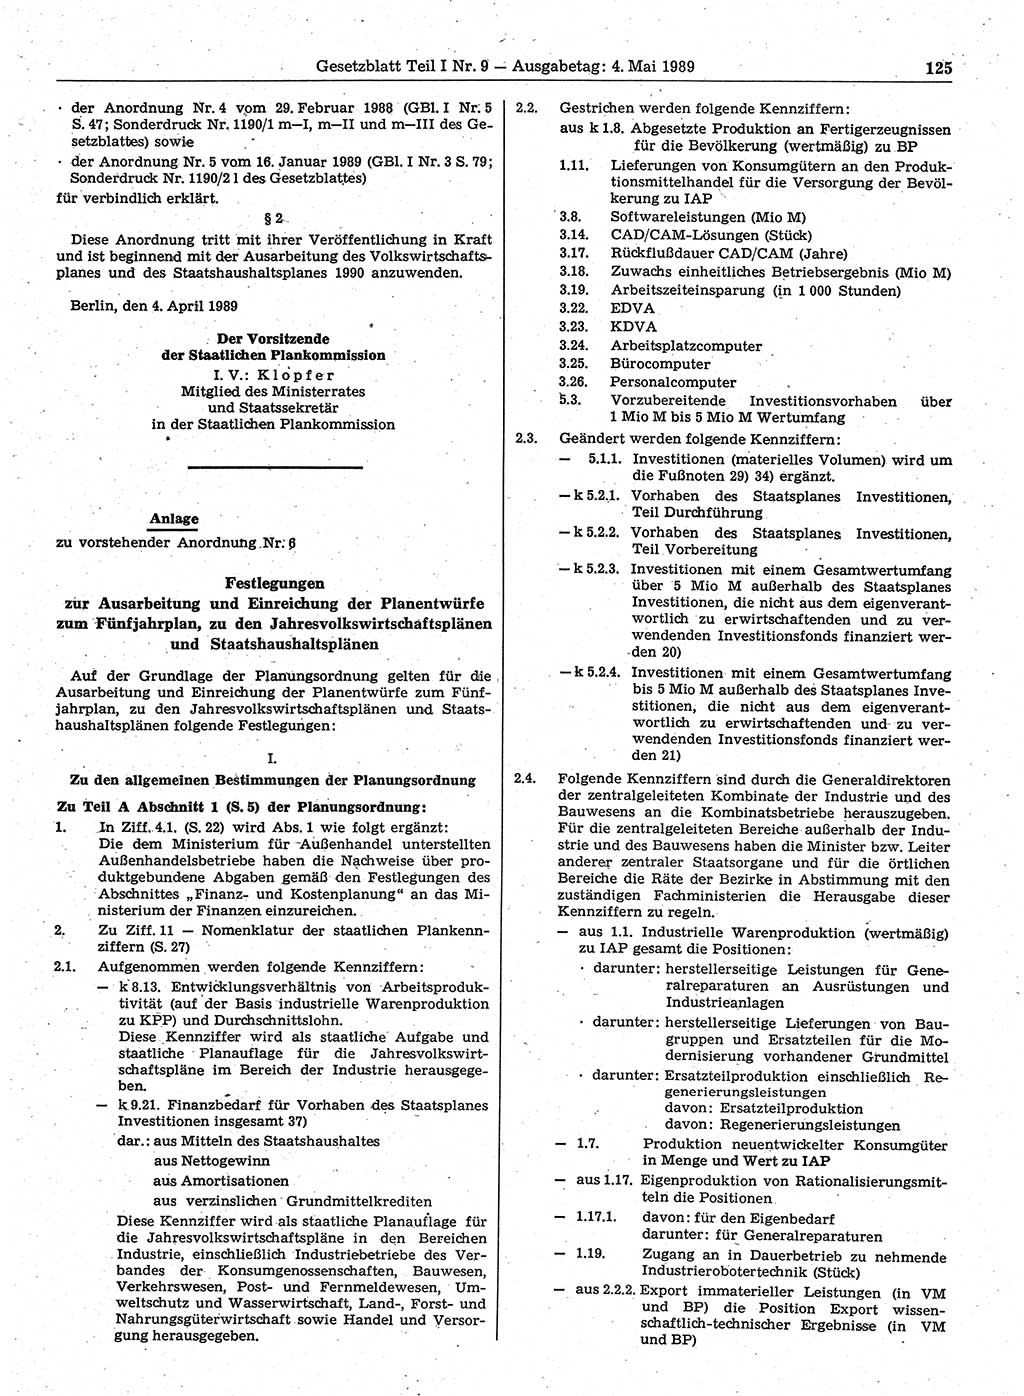 Gesetzblatt (GBl.) der Deutschen Demokratischen Republik (DDR) Teil Ⅰ 1989, Seite 125 (GBl. DDR Ⅰ 1989, S. 125)